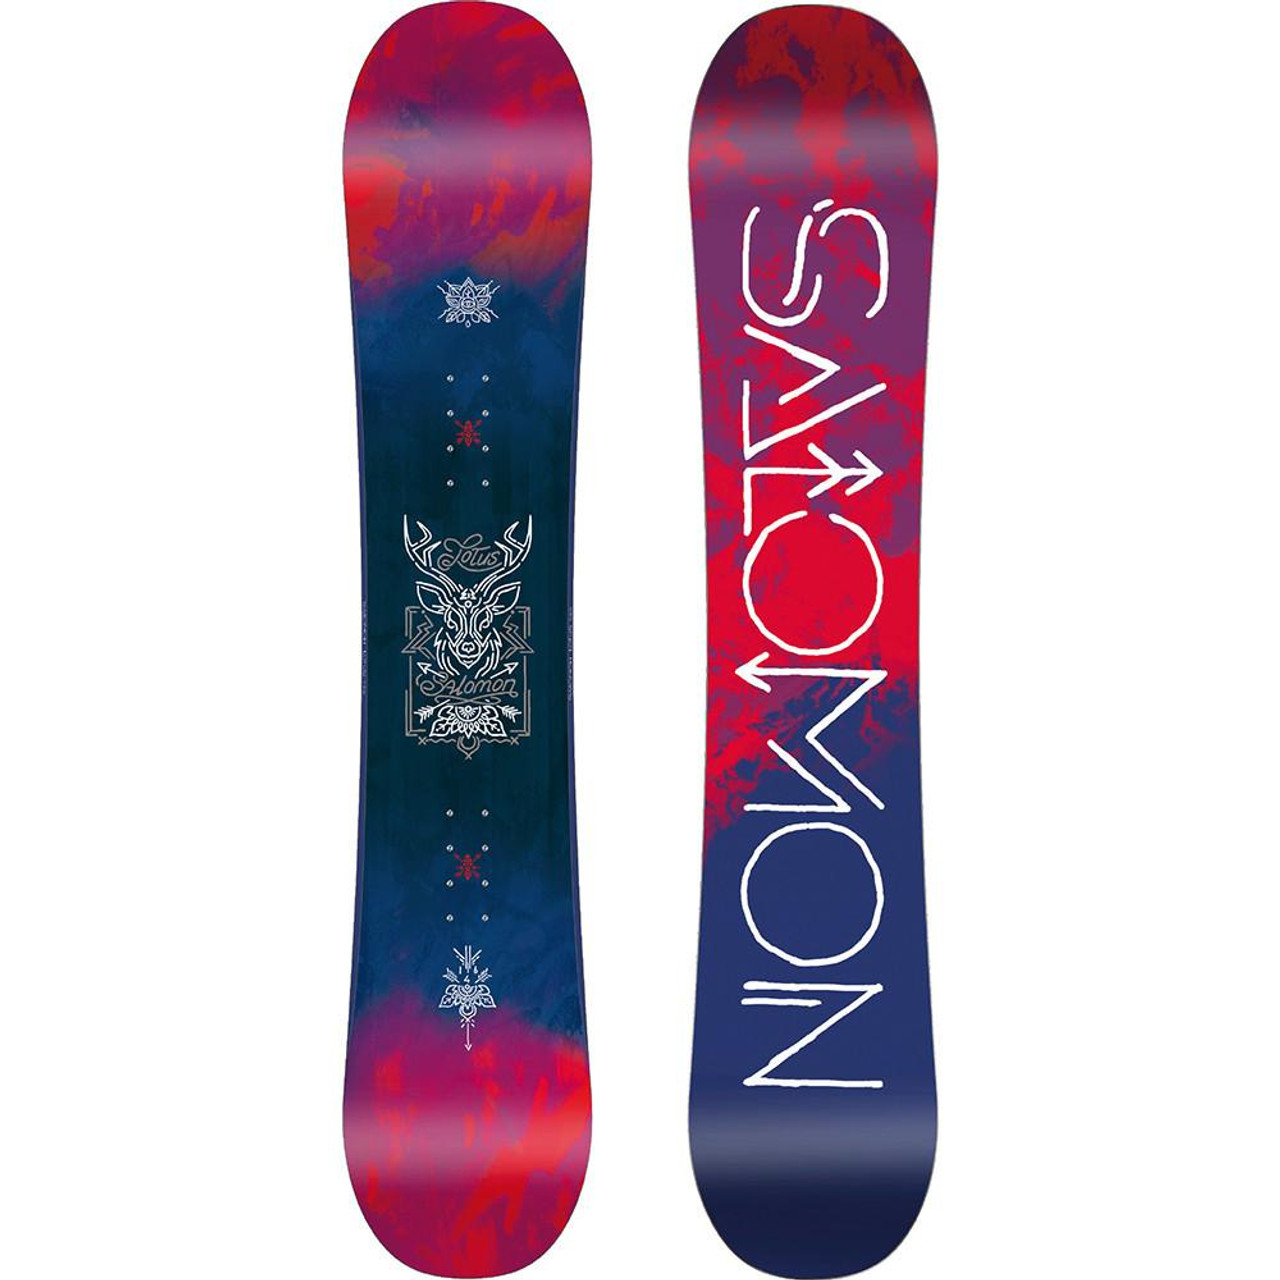 Salomon Lotus 2018 | Salomon Lotus Women's Snowboard